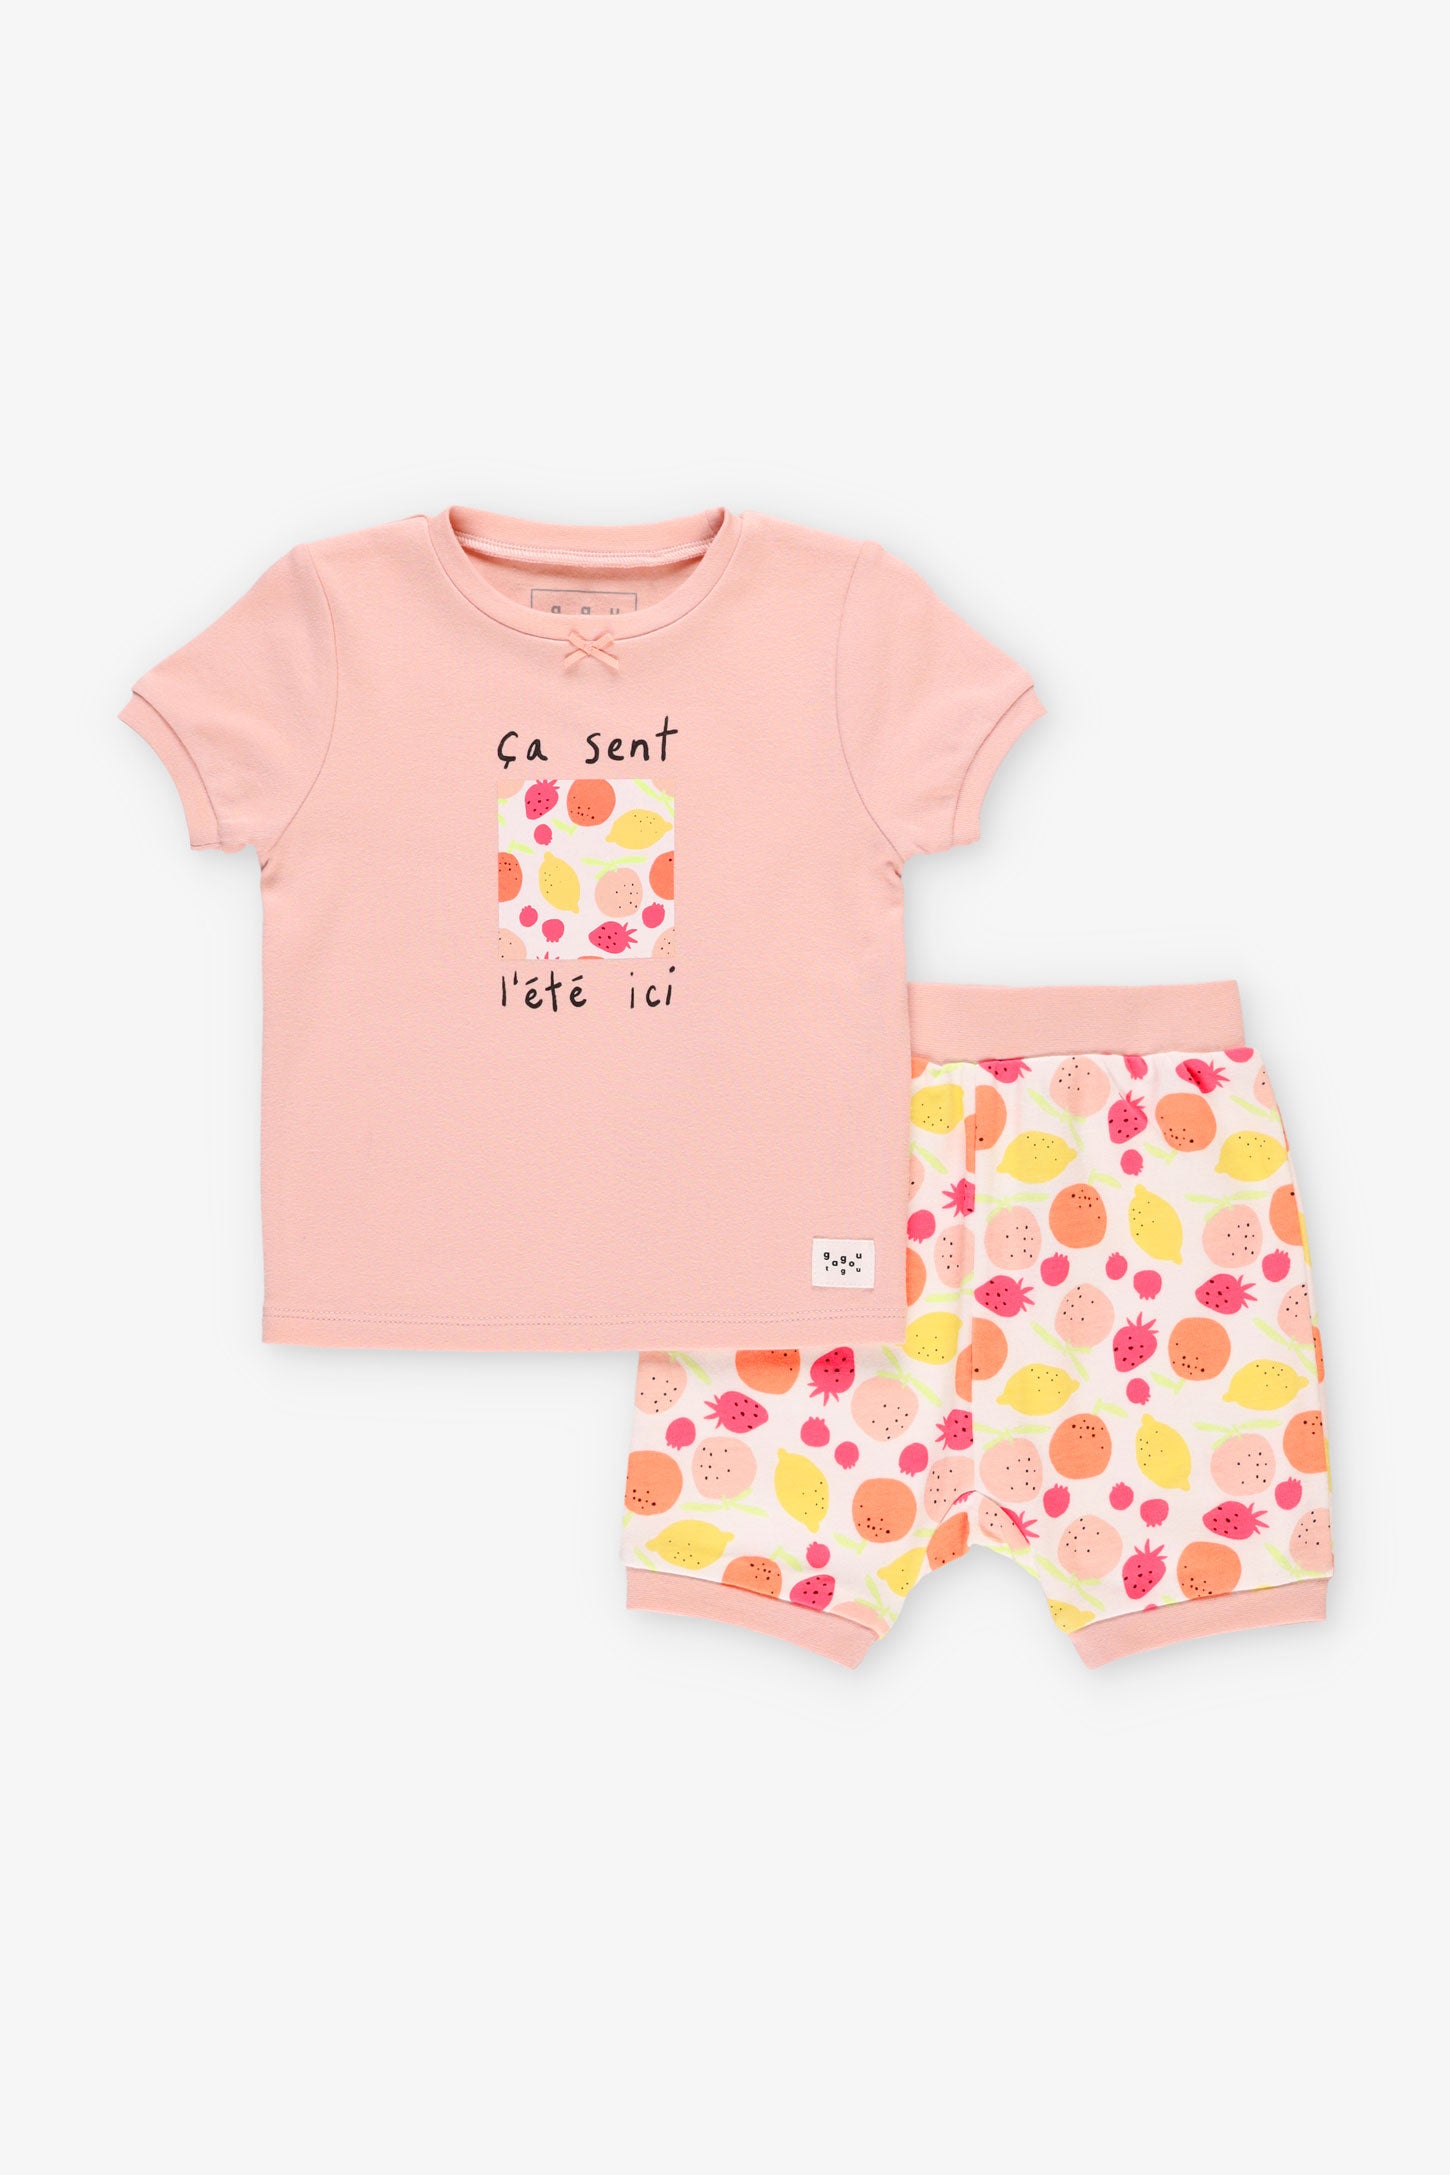 Pyjama 2-pièces en coton bio, 2T-3T - Bébé fille && ROSE